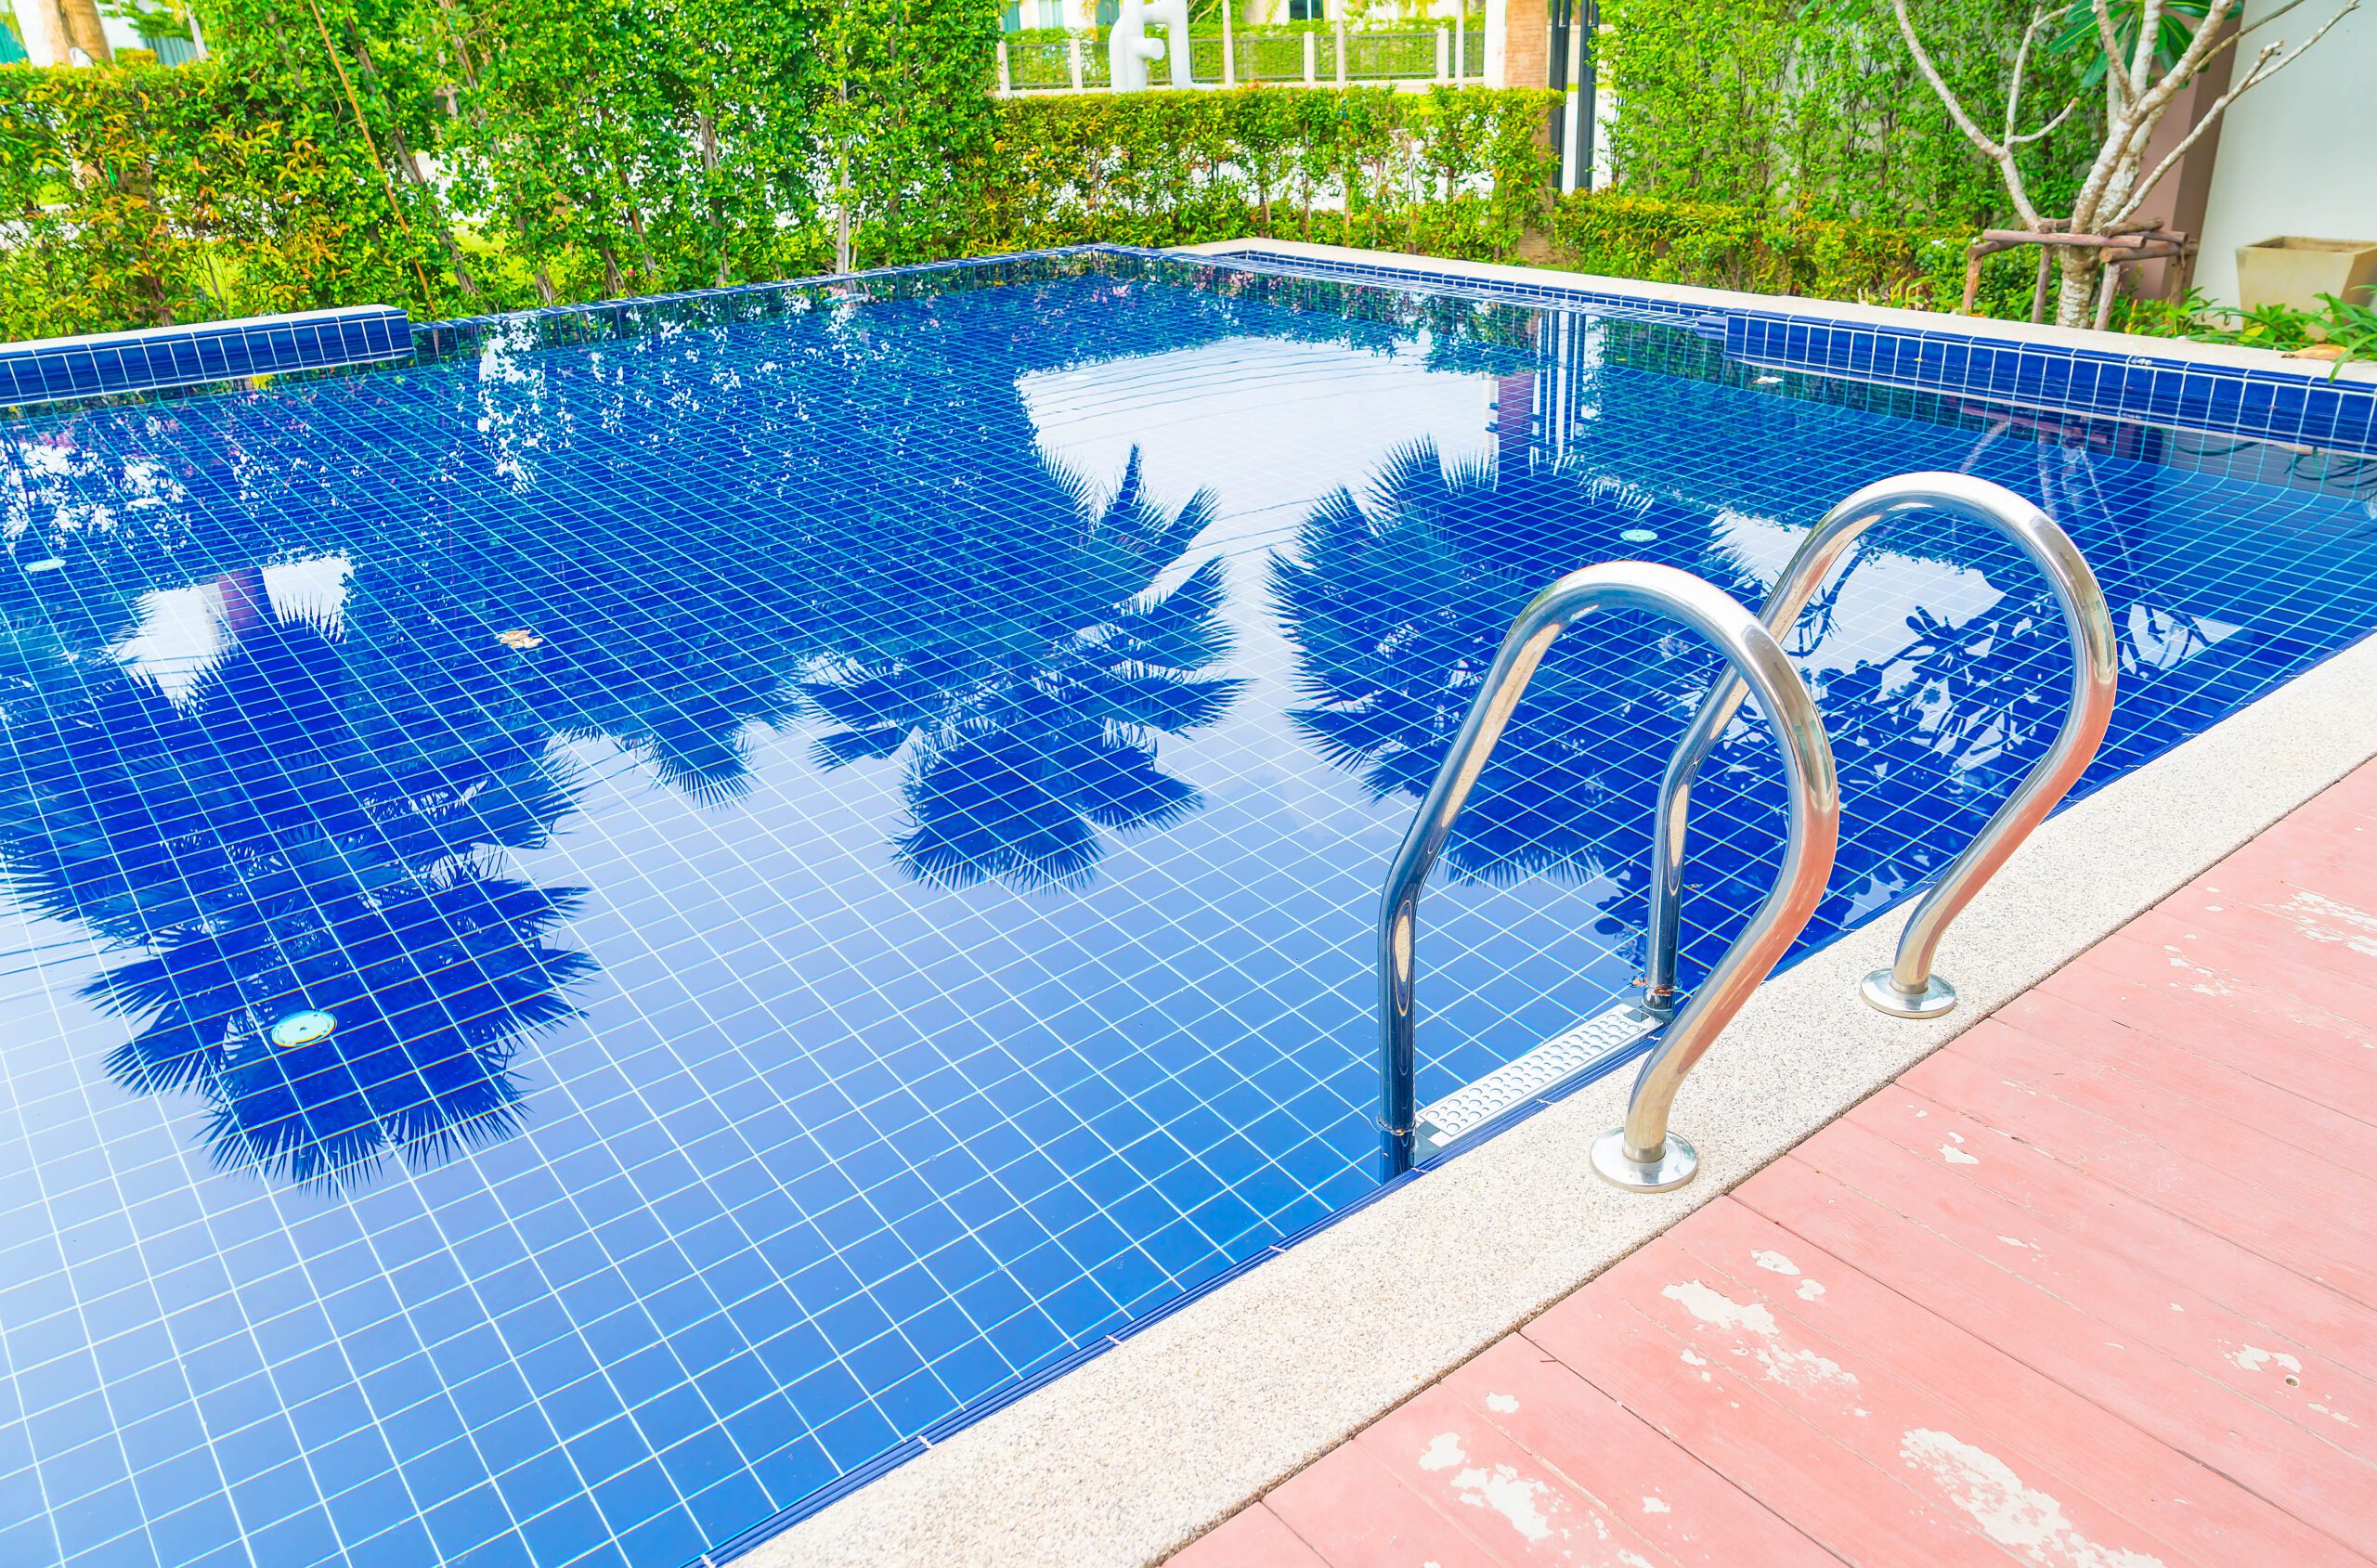 Stair swimming pool in beautiful luxury hotel pool resort